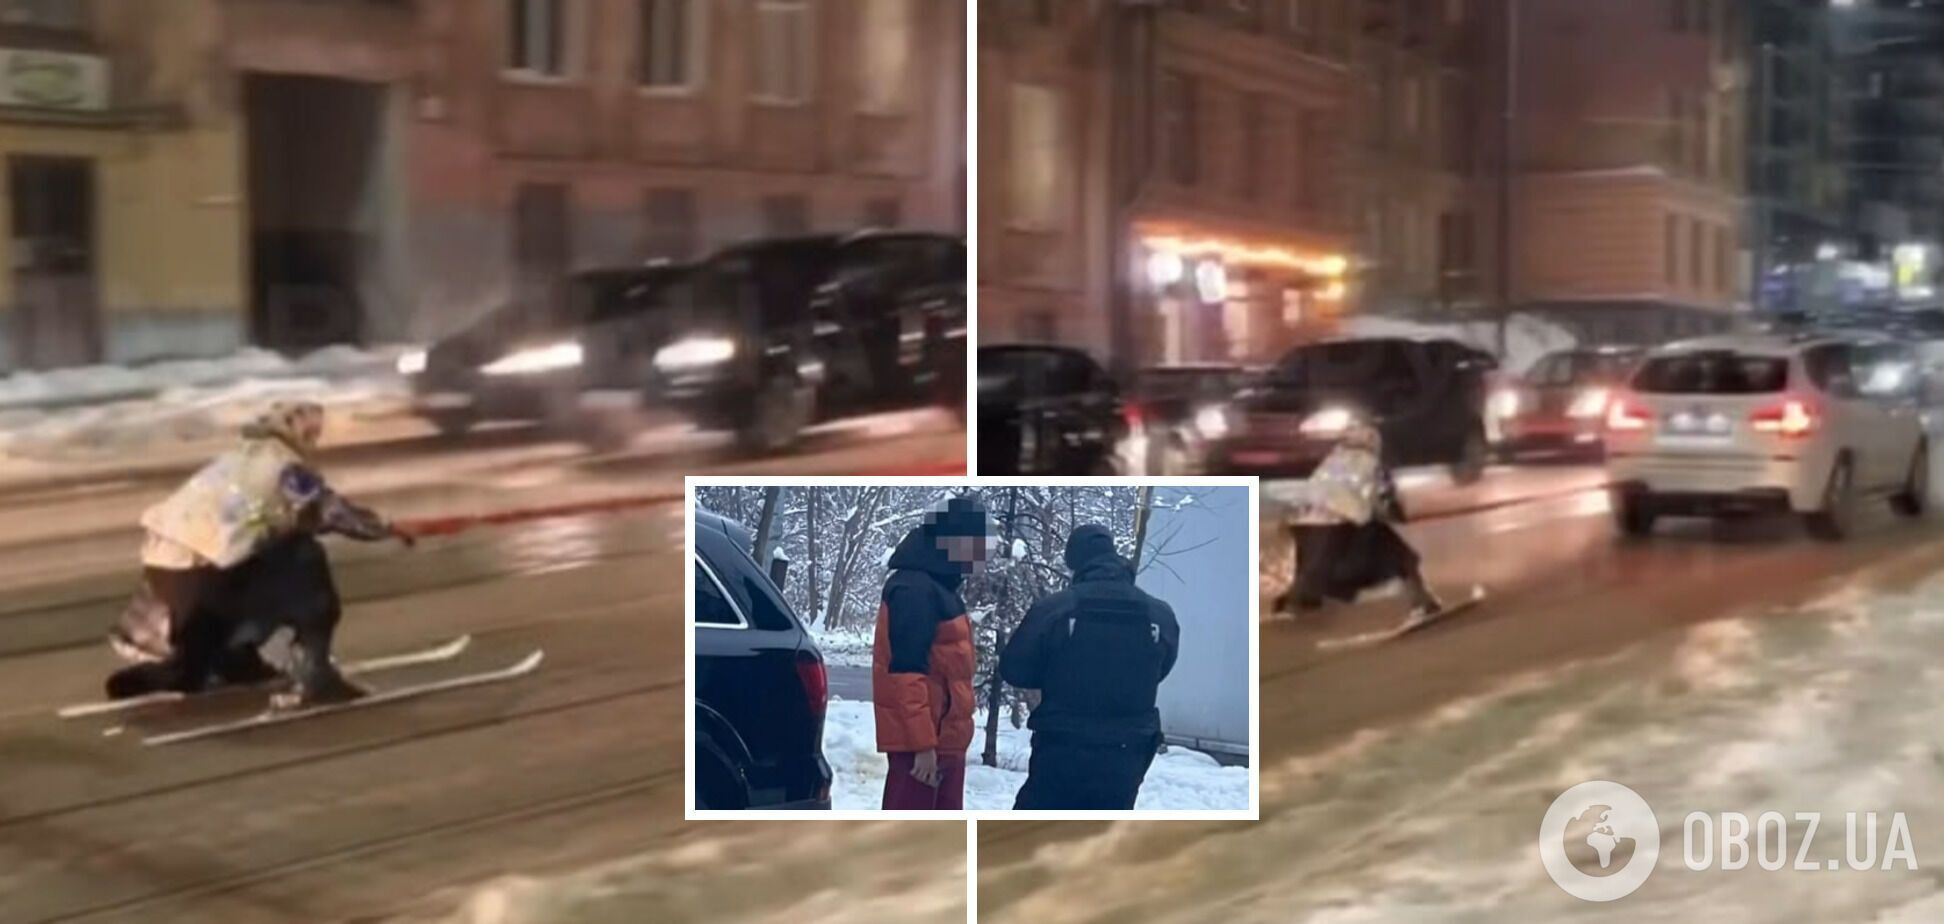 Во Львове полиция оштрафовала блогера, который 'замаскировался' под бабушку и катался на лыжах: данные о нем передали в военкомат